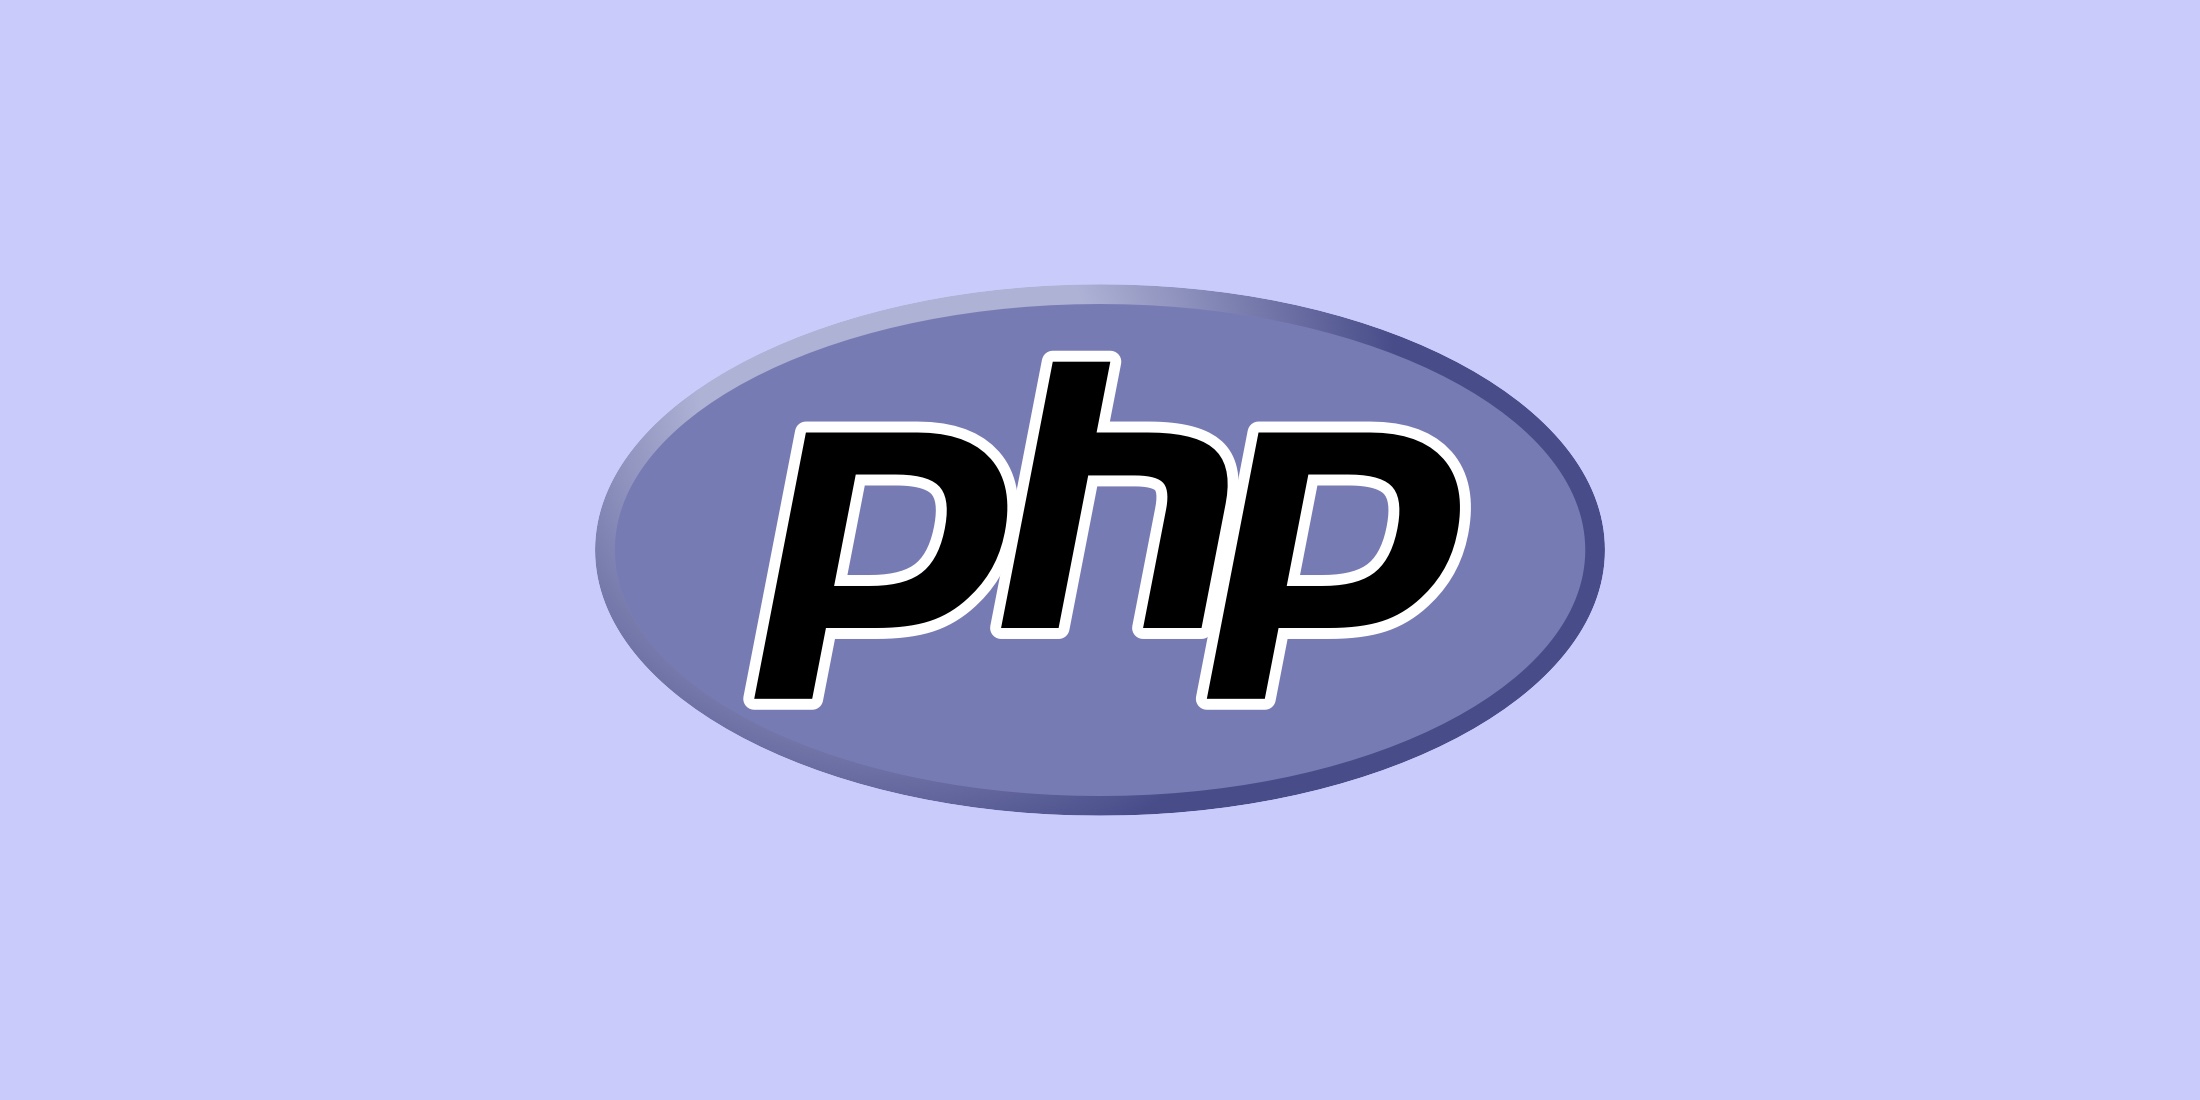 ¿Cómo enviar un mensaje a través de la API de WhatsApp usando PHP?